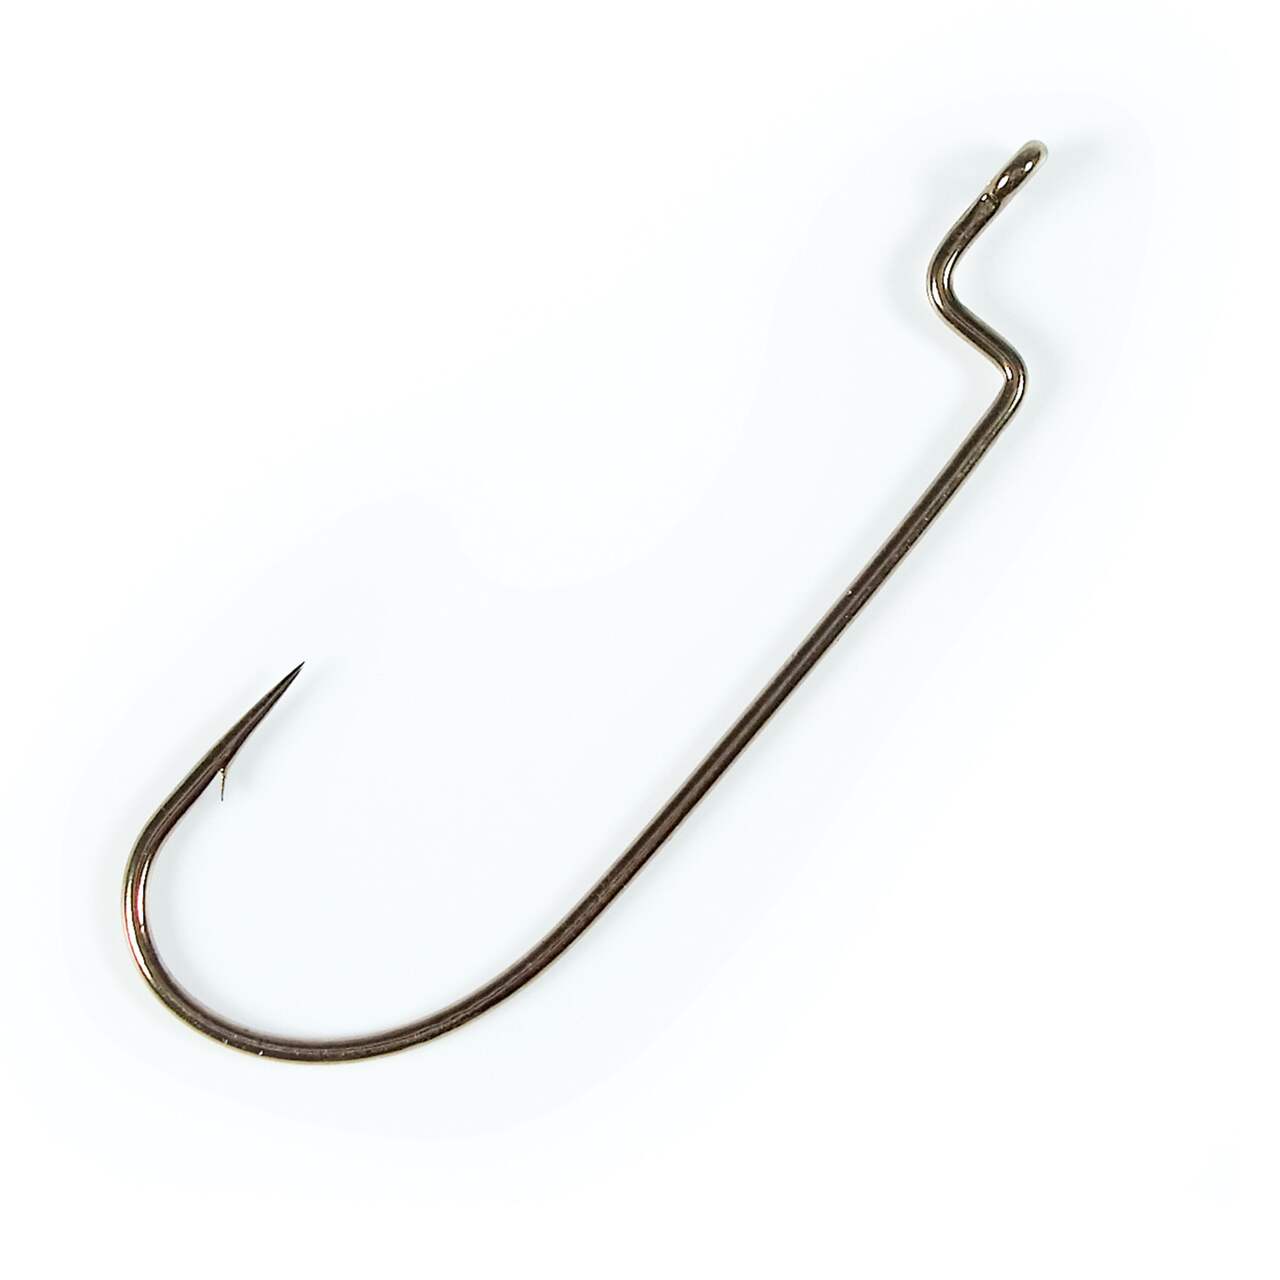 Gamakatsu Worm Hook, Bronze